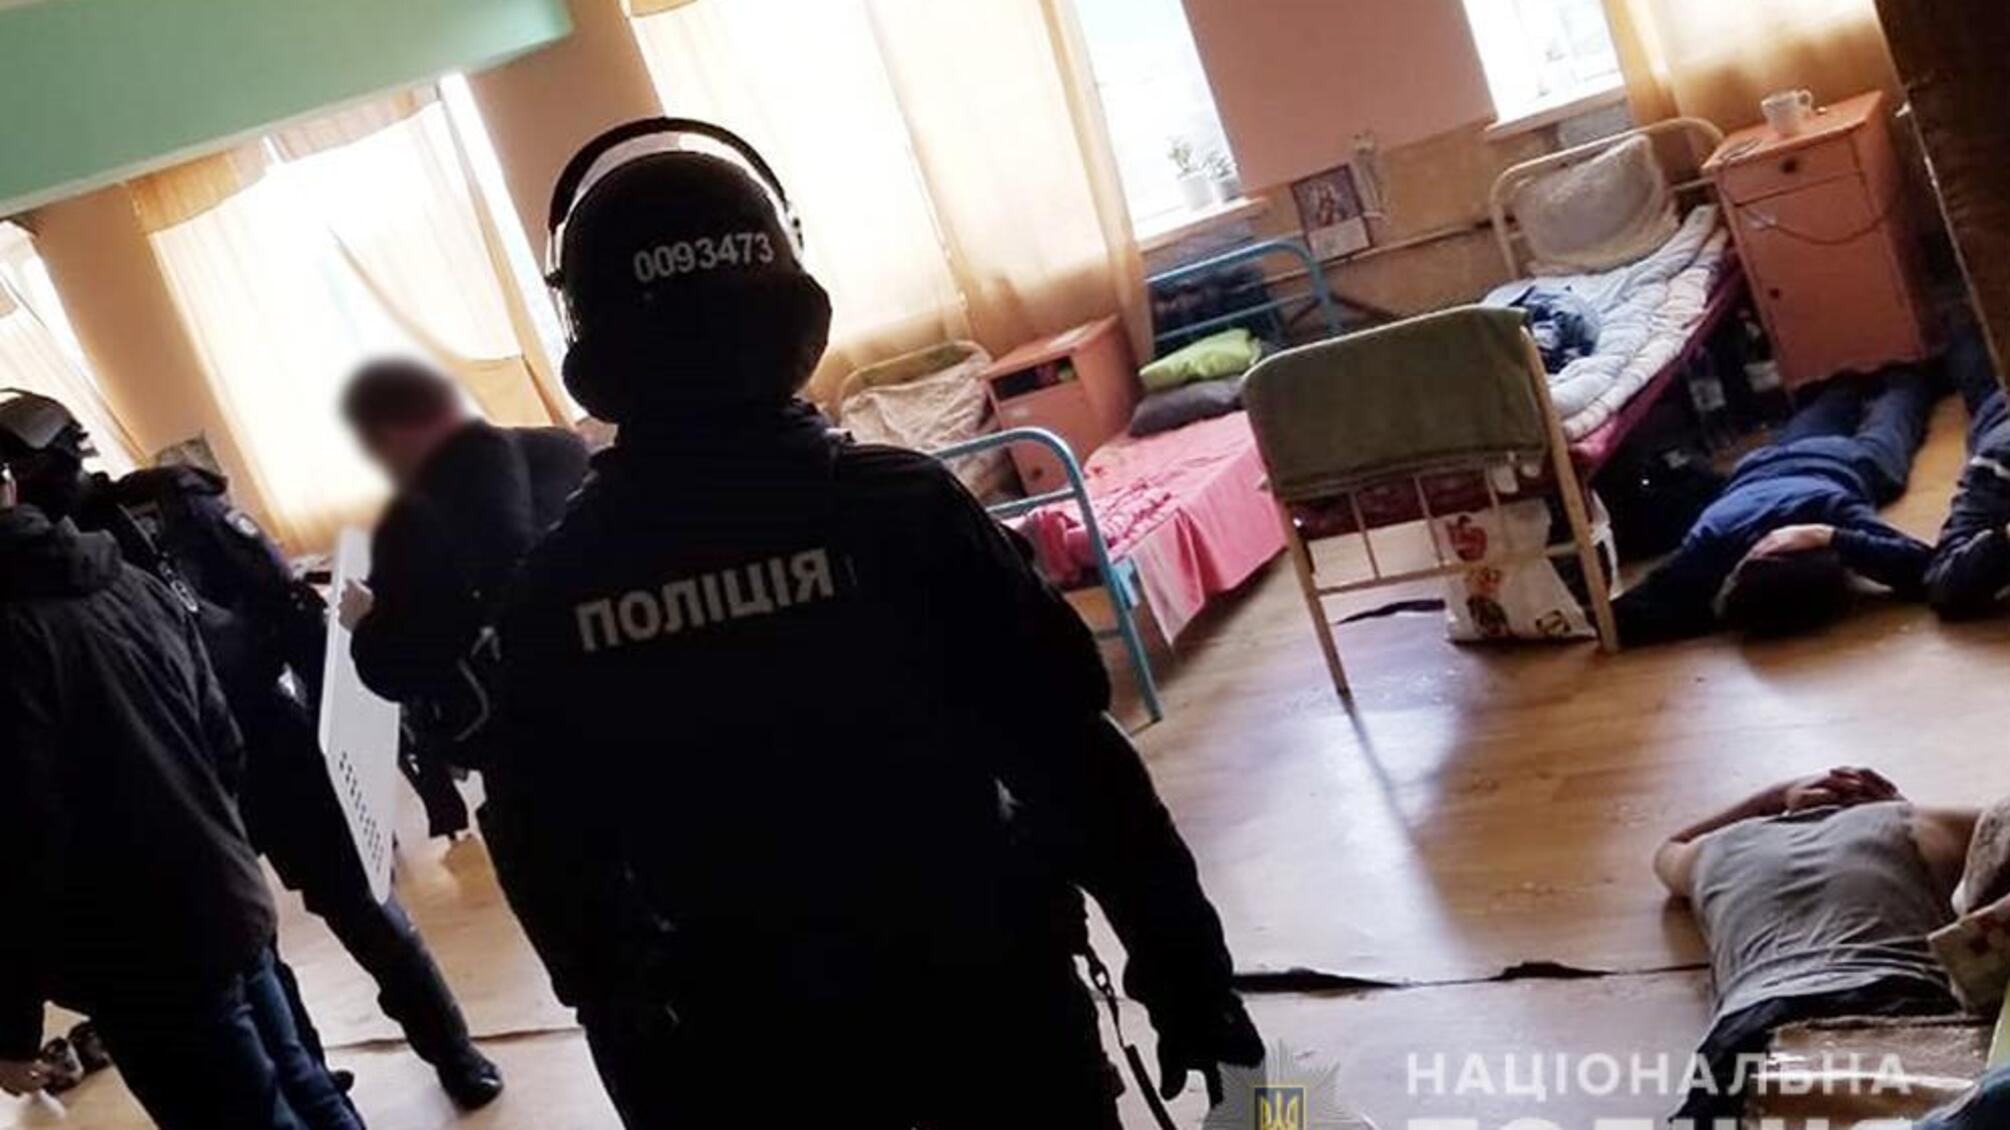 На Рівненщині правоохоронці затримали злочинну групу, яка займалася розповсюдженням наркотиків на території виправного центру Державної пенітенціарної служби України